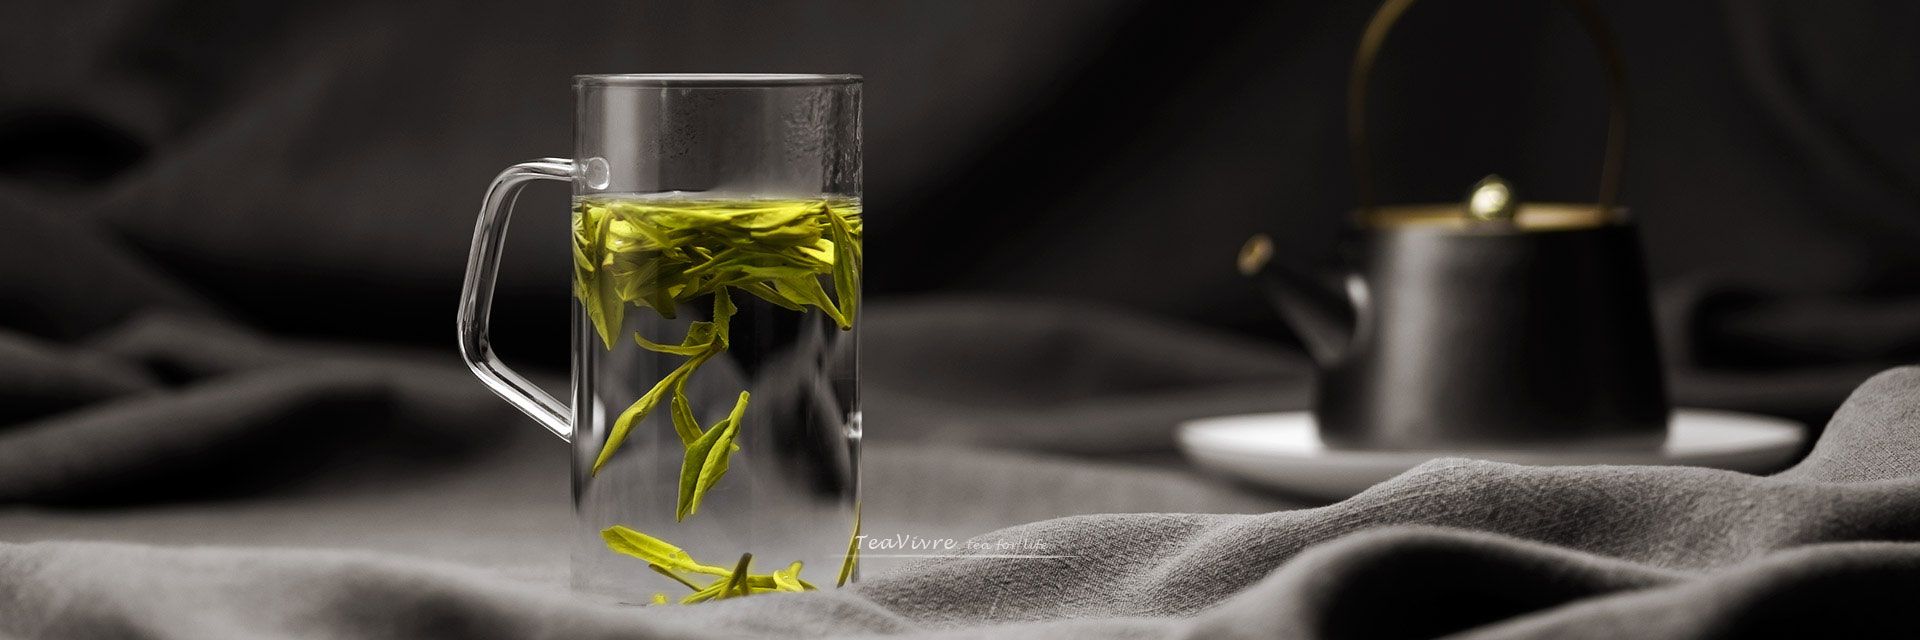 Transparent Simple Glass Tea Cup